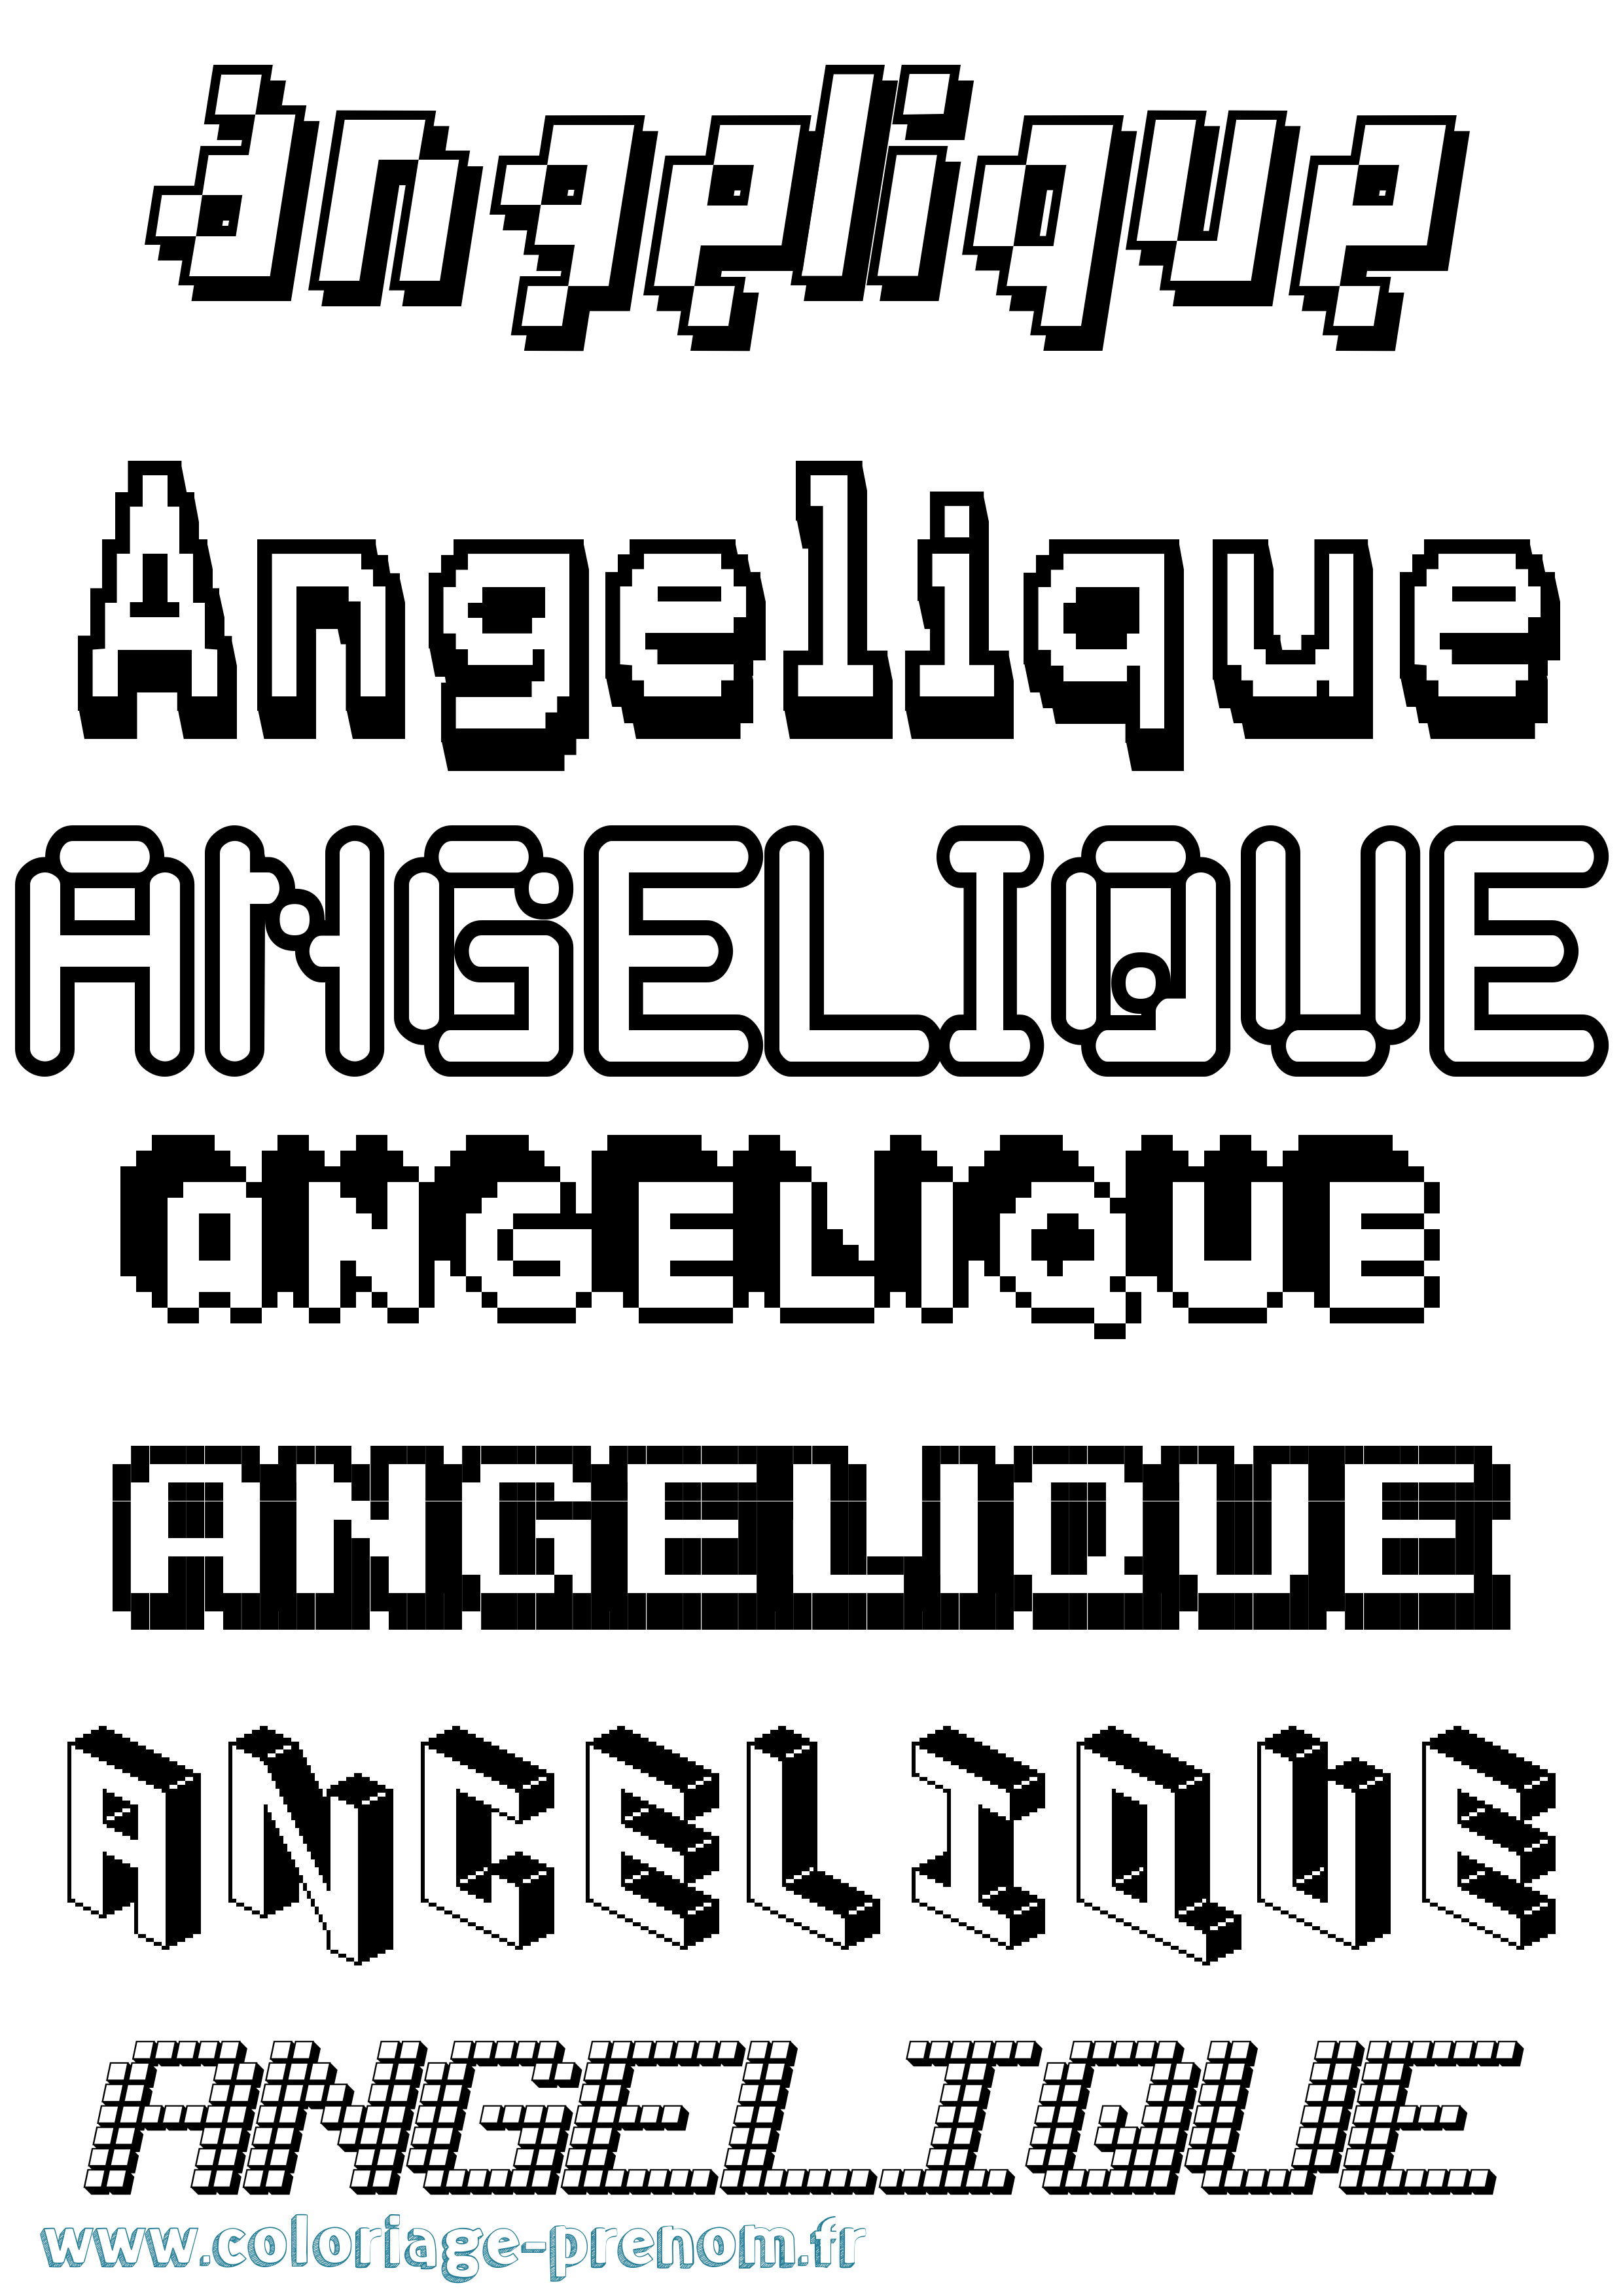 Coloriage prénom Angelique Pixel